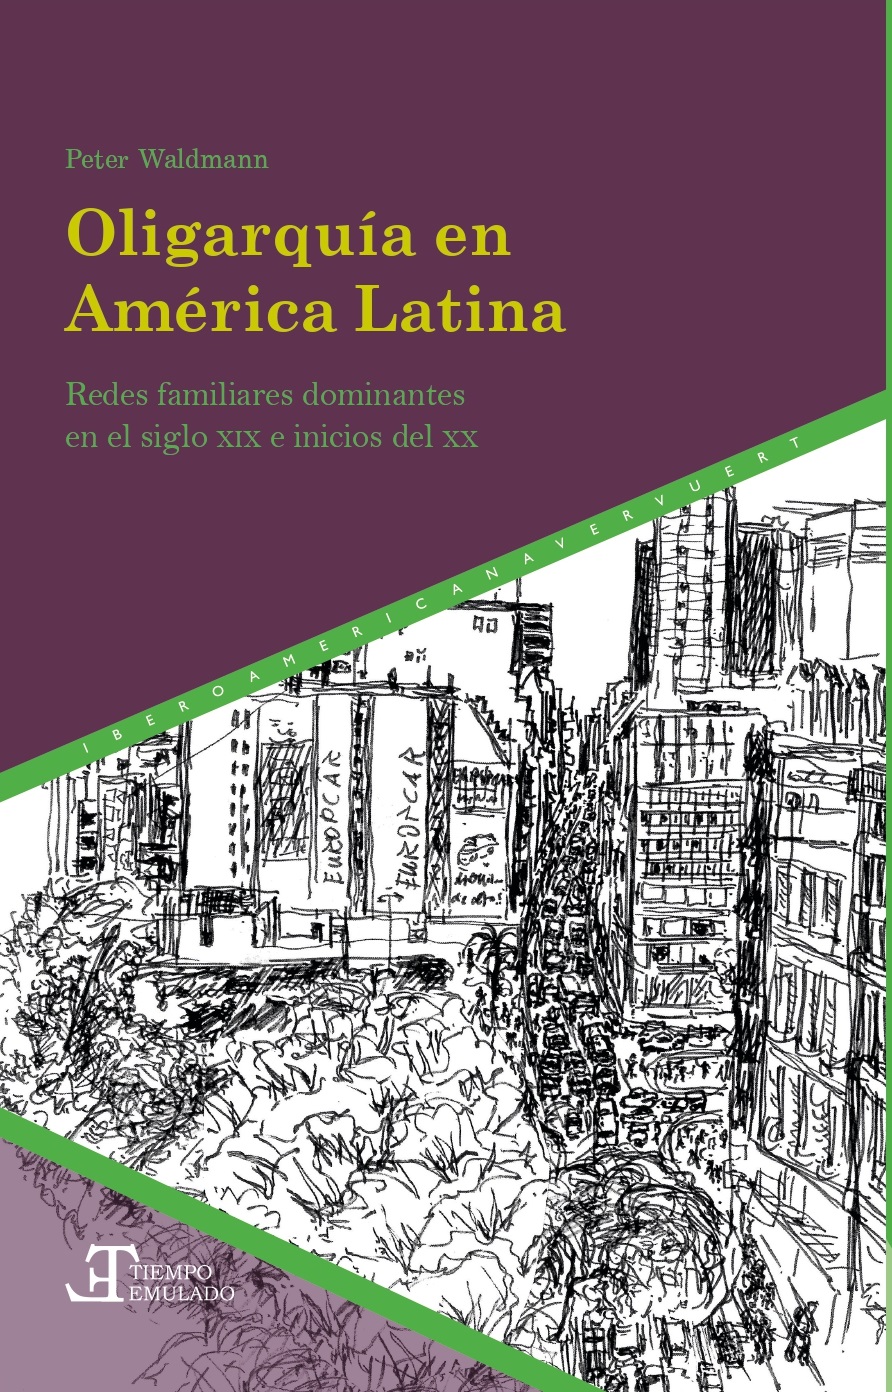 Oligarquía en América Latina